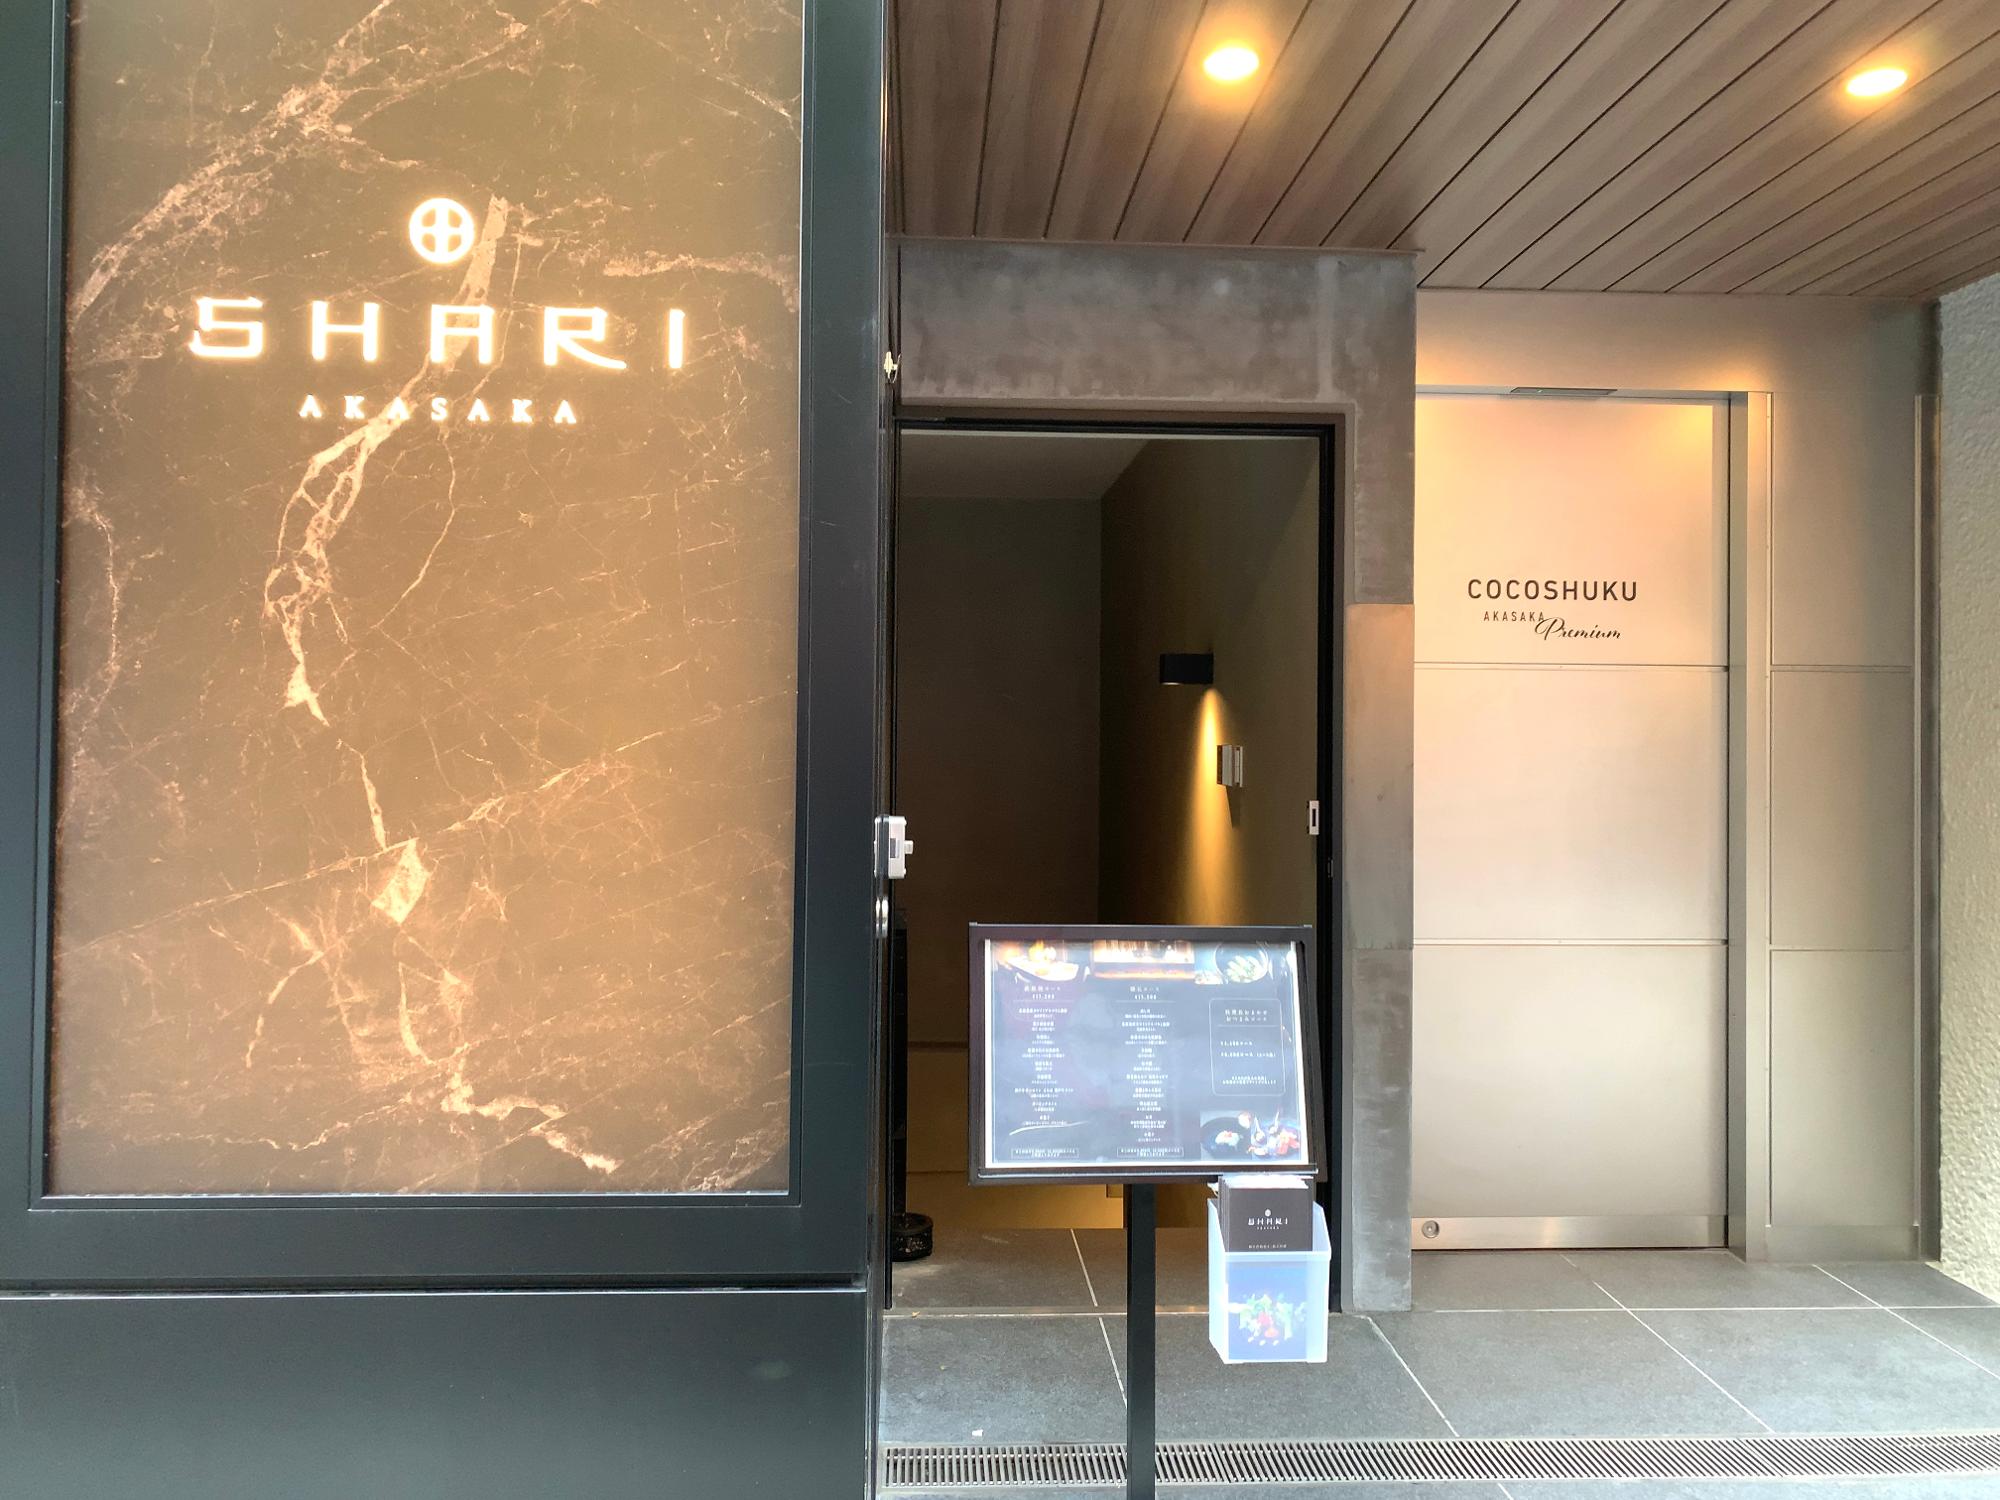 4月にオープンした〈COCOSHUKU赤坂Premium（ココシュク赤坂プレミアム）〉のダイニングとして地下1階にオープン